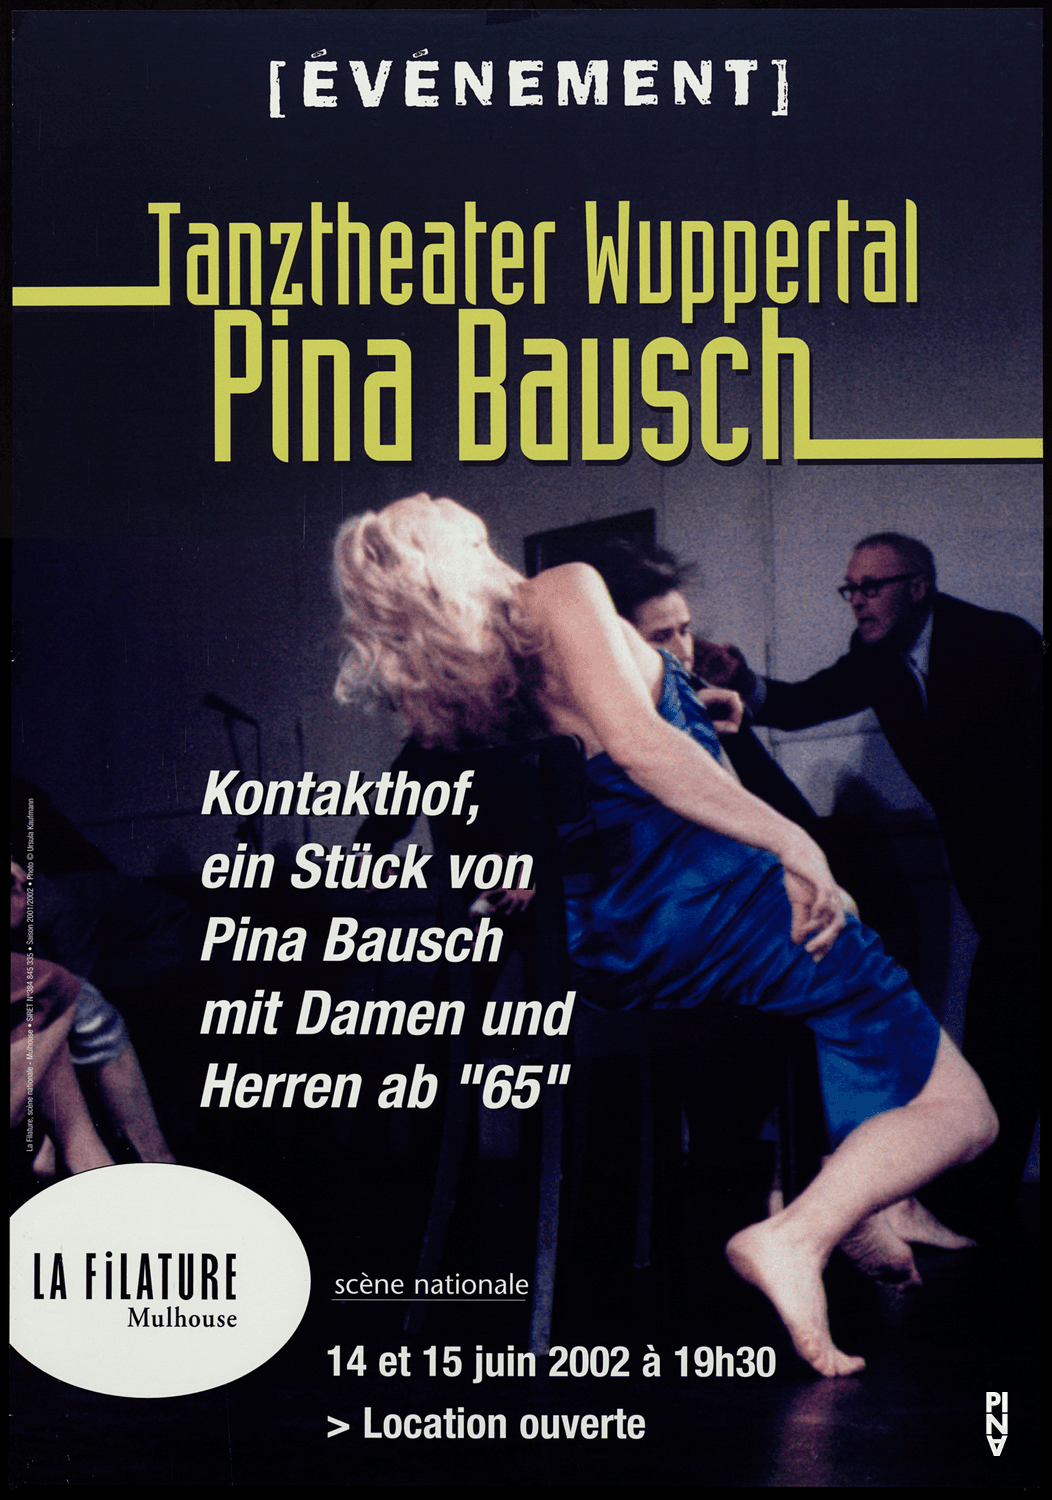 Plakat: Ursula Kaufmann © Pina Bausch Foundation, Foto: Ursula Kaufmann